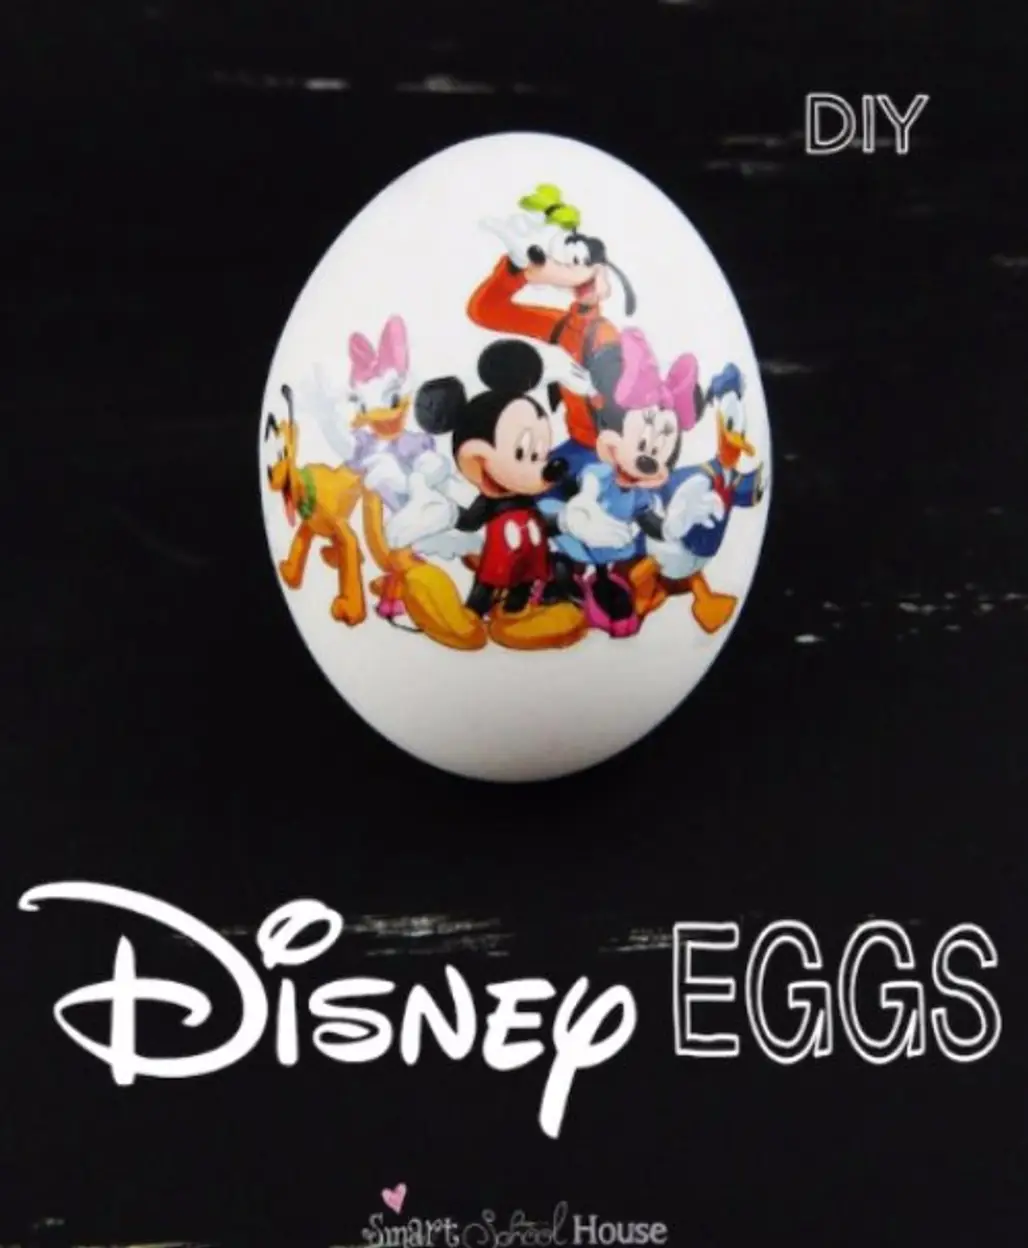 How to Make Disney Eggs